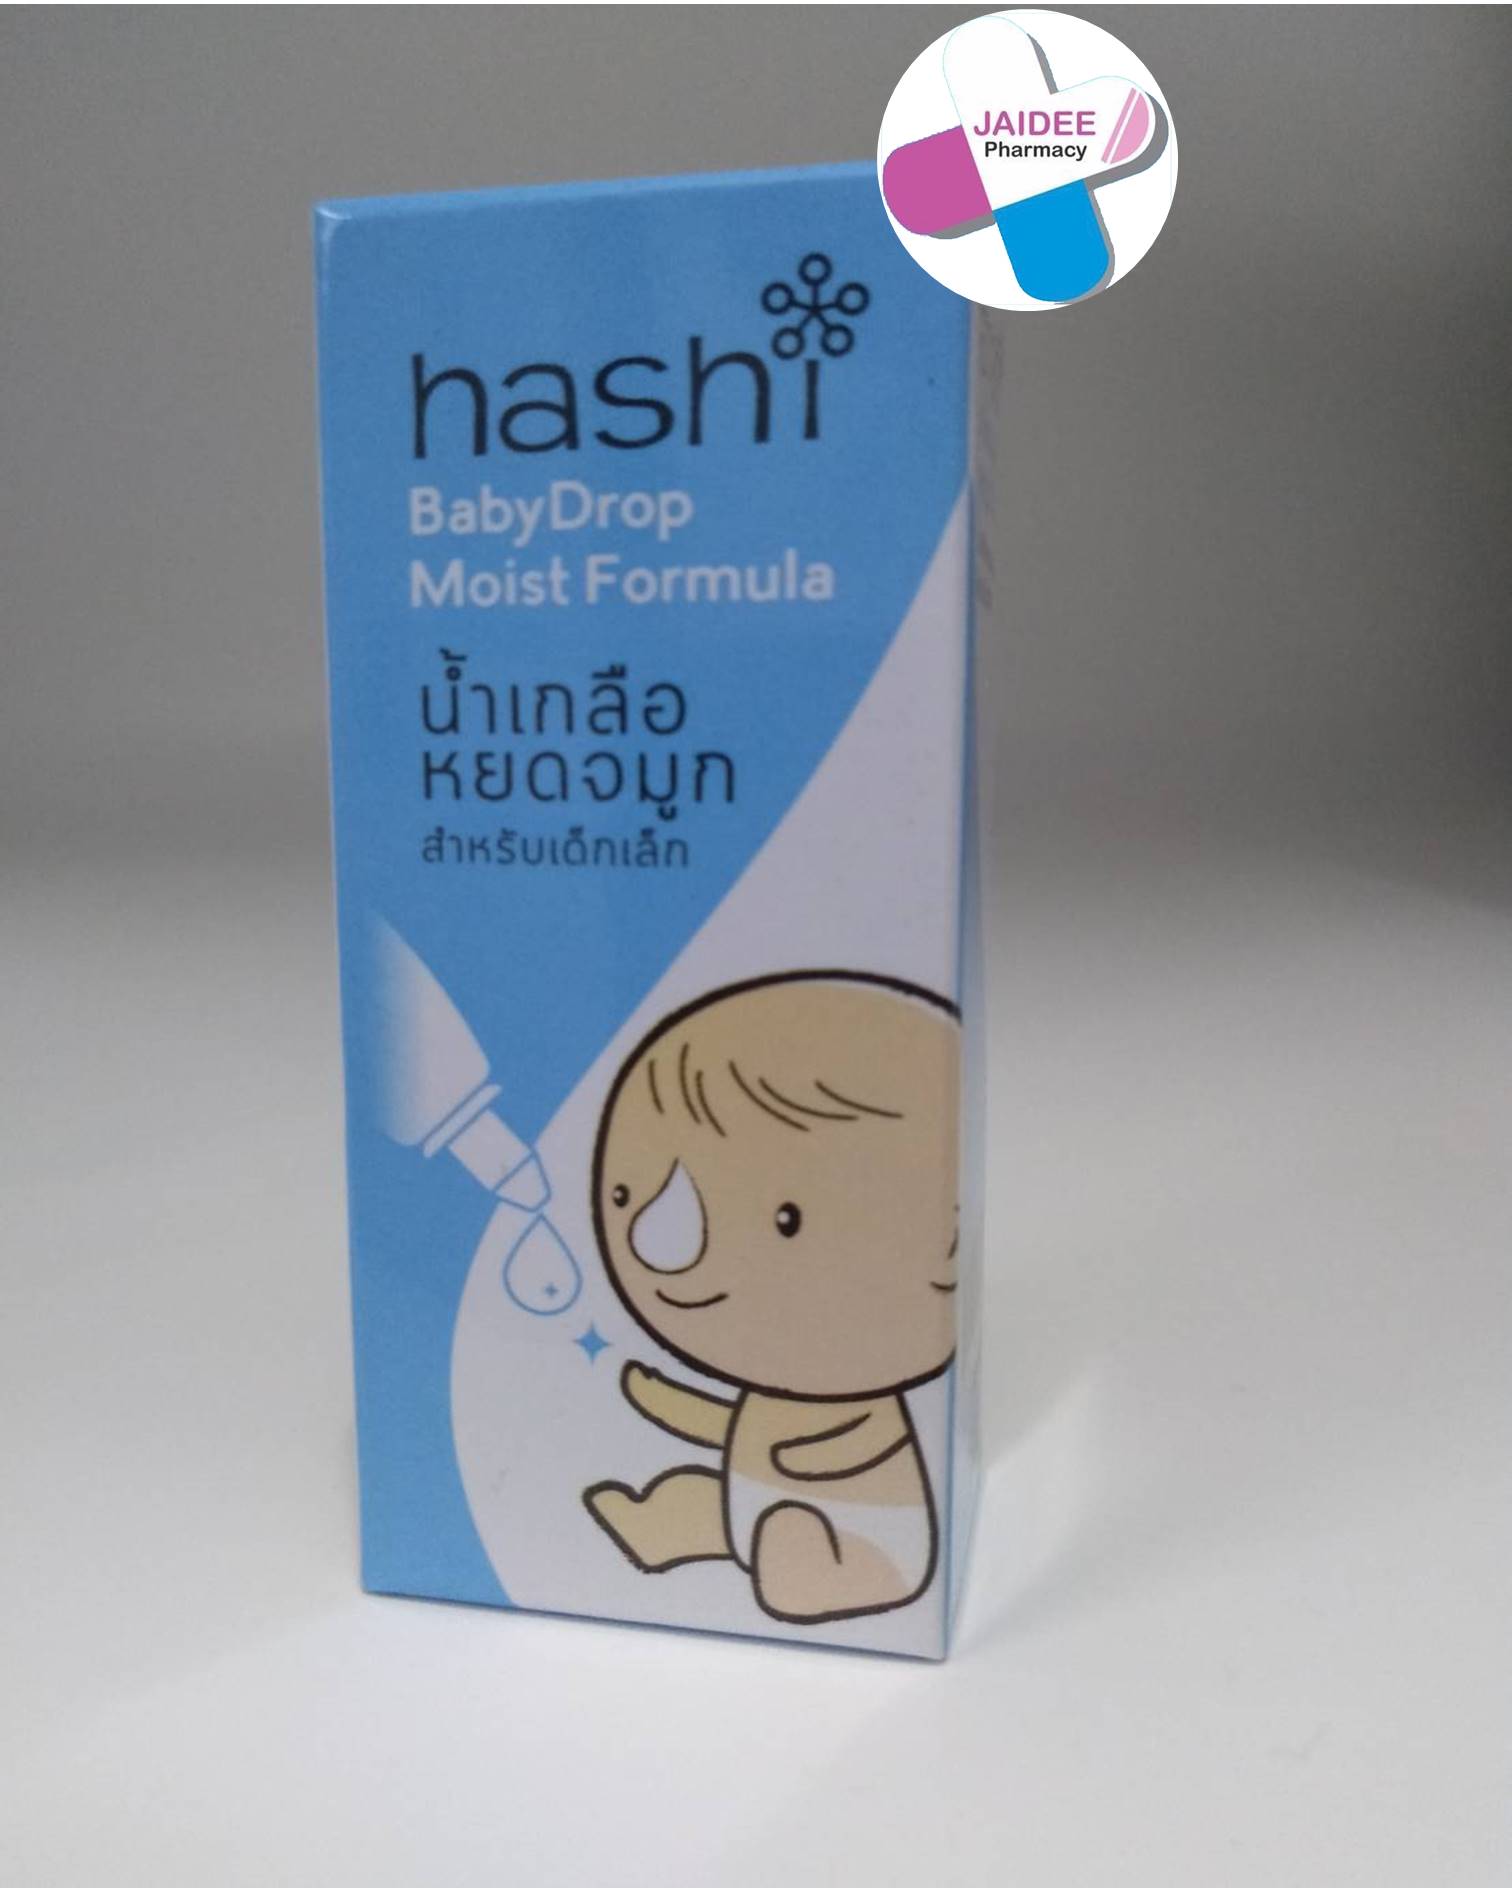 Hashi Baby Drop 4 ML น้ำเกลือหยดจมูก (สีฟ้า)  สำหรับเด็กเล็ก ช่วยให้น้ำมูกนิ่ม และสูดออกง่าย